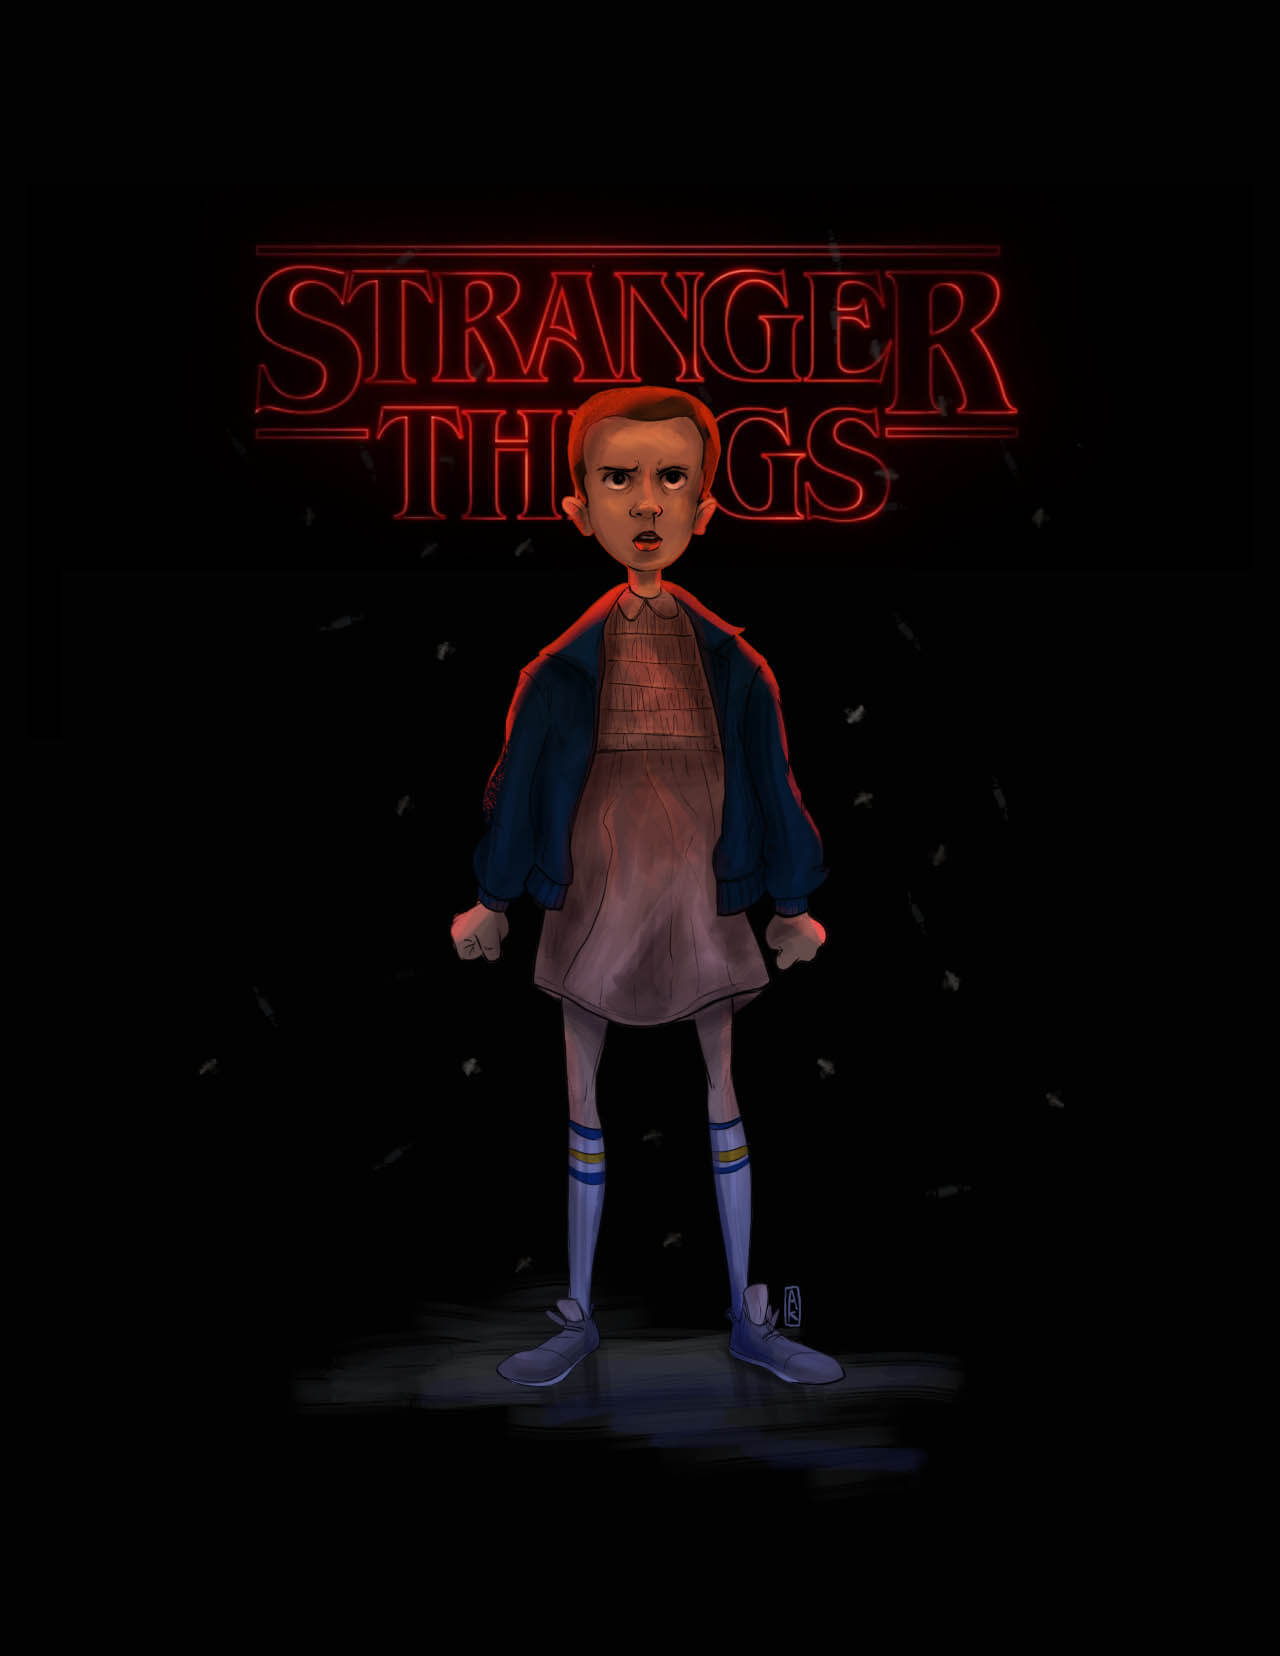 50 Fans Art issus de la série Stranger Things.